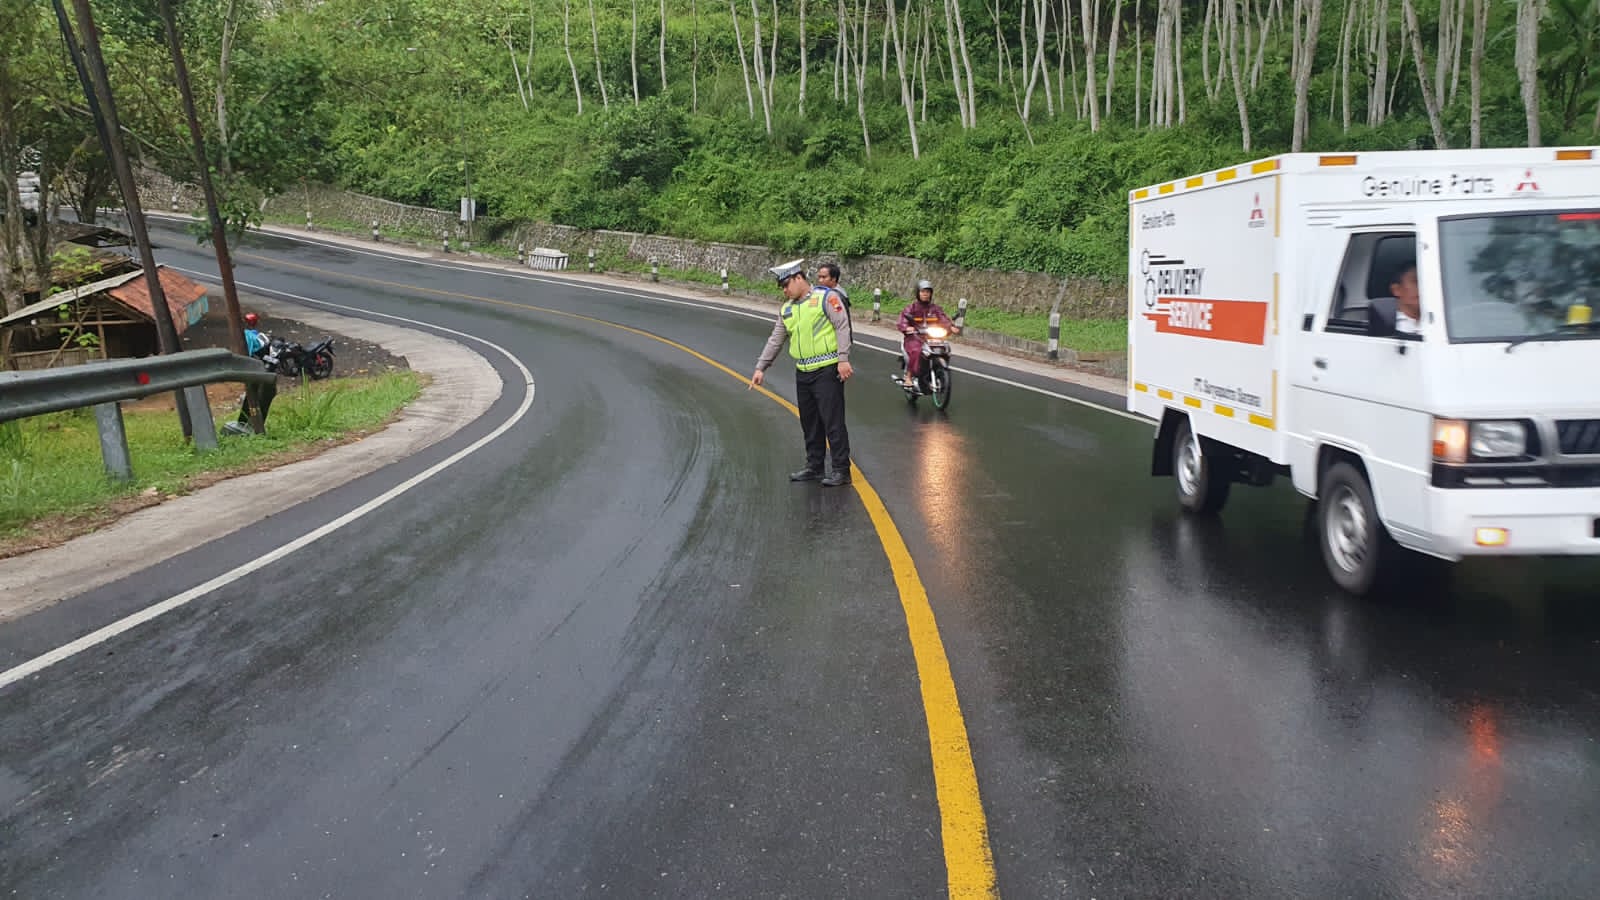 Kecelakan Maut di Wanareja, Mobil vs Sepeda Motor, 1 Orang Meninggal Dunia